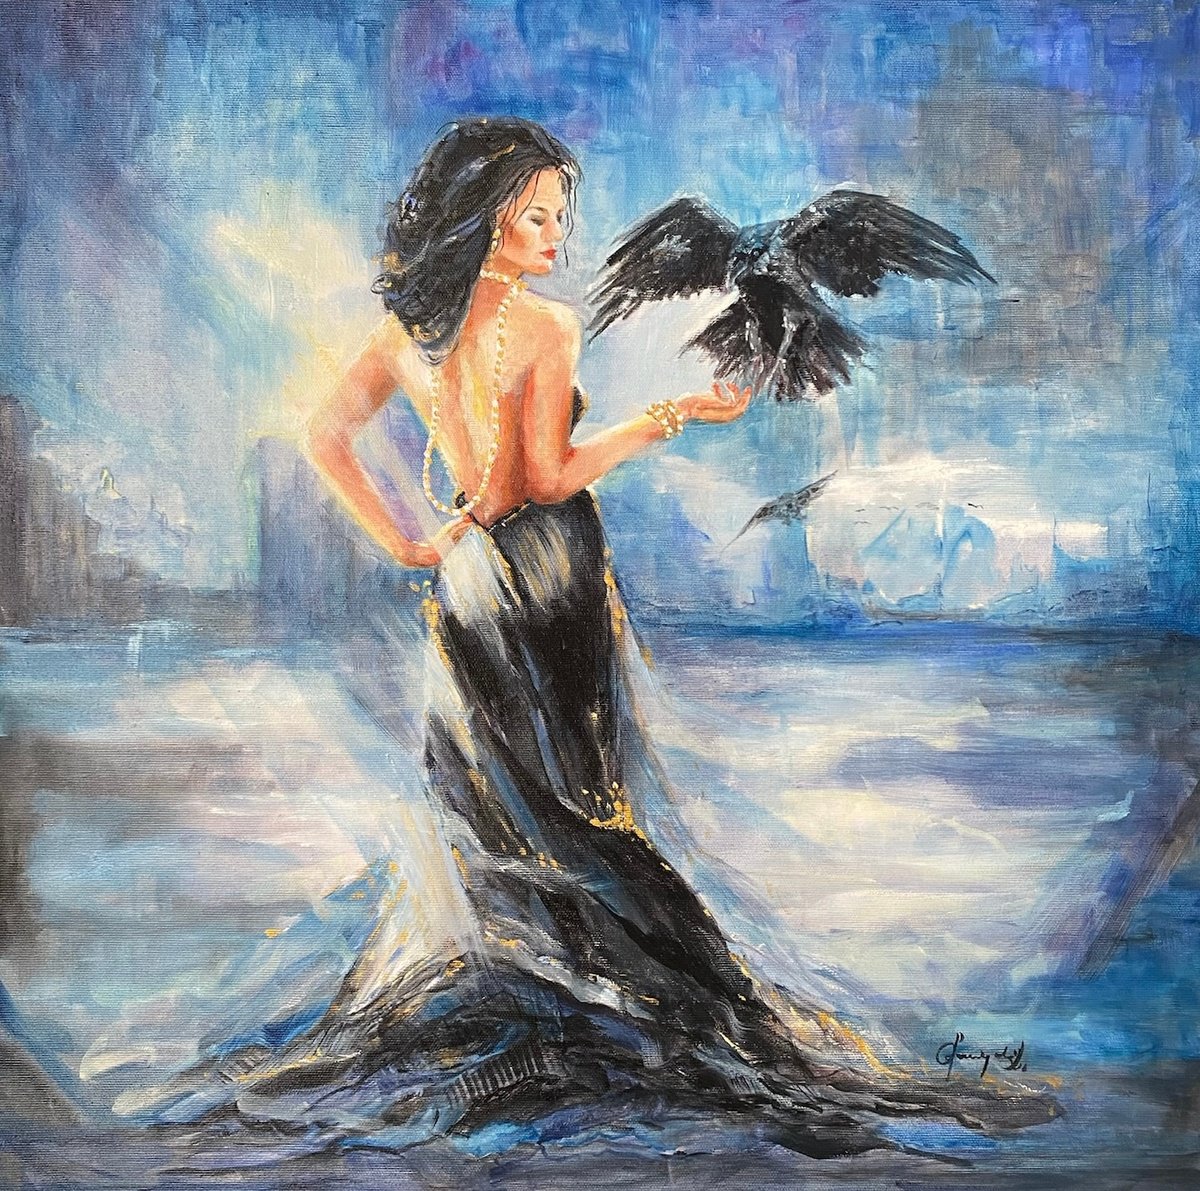 Woman With Crow by Krystyna Przygoda